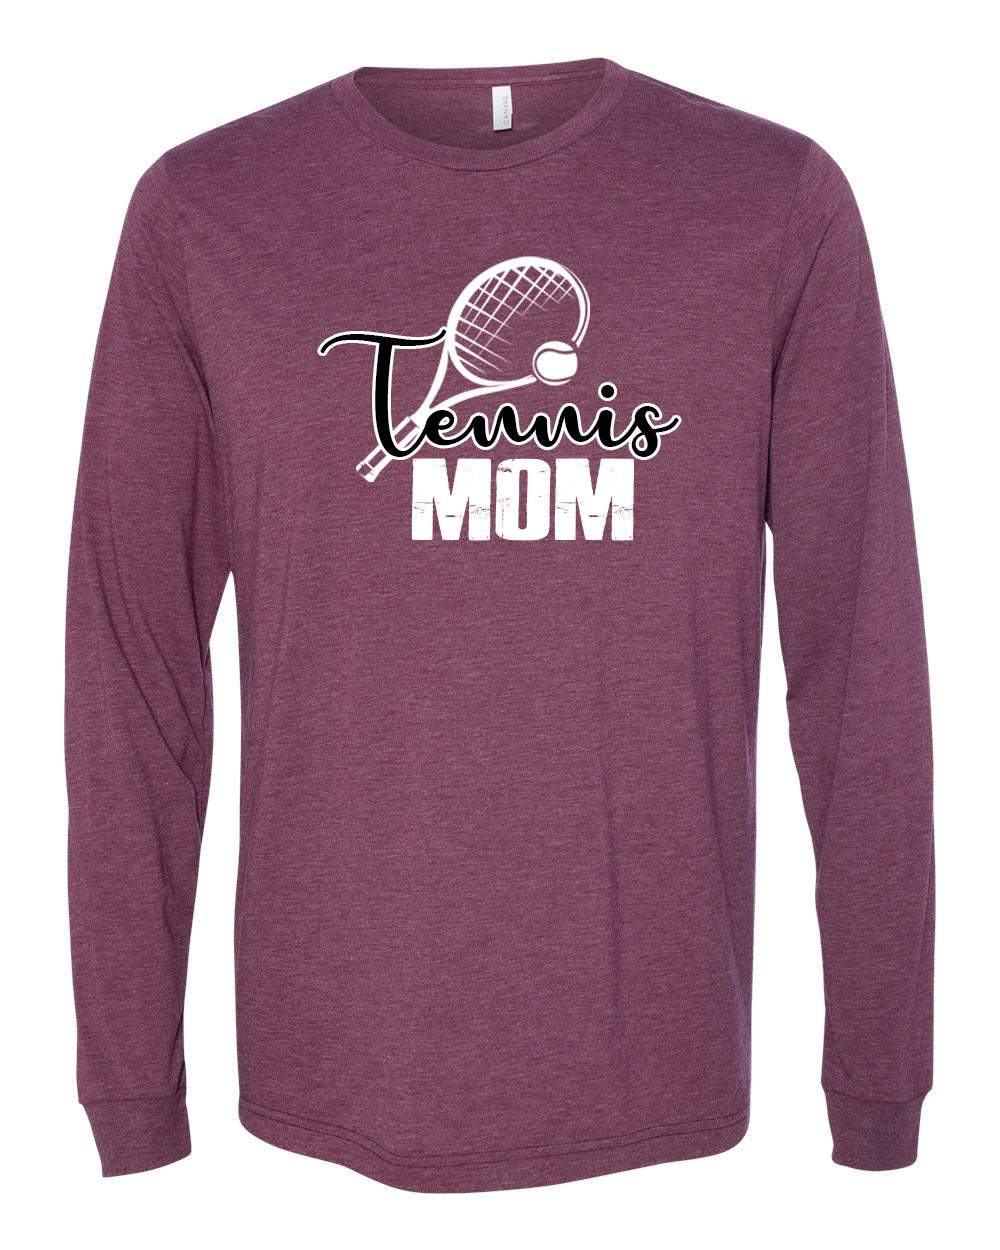 Newton Tennis Mom Long Sleeve Shirt, Maroon